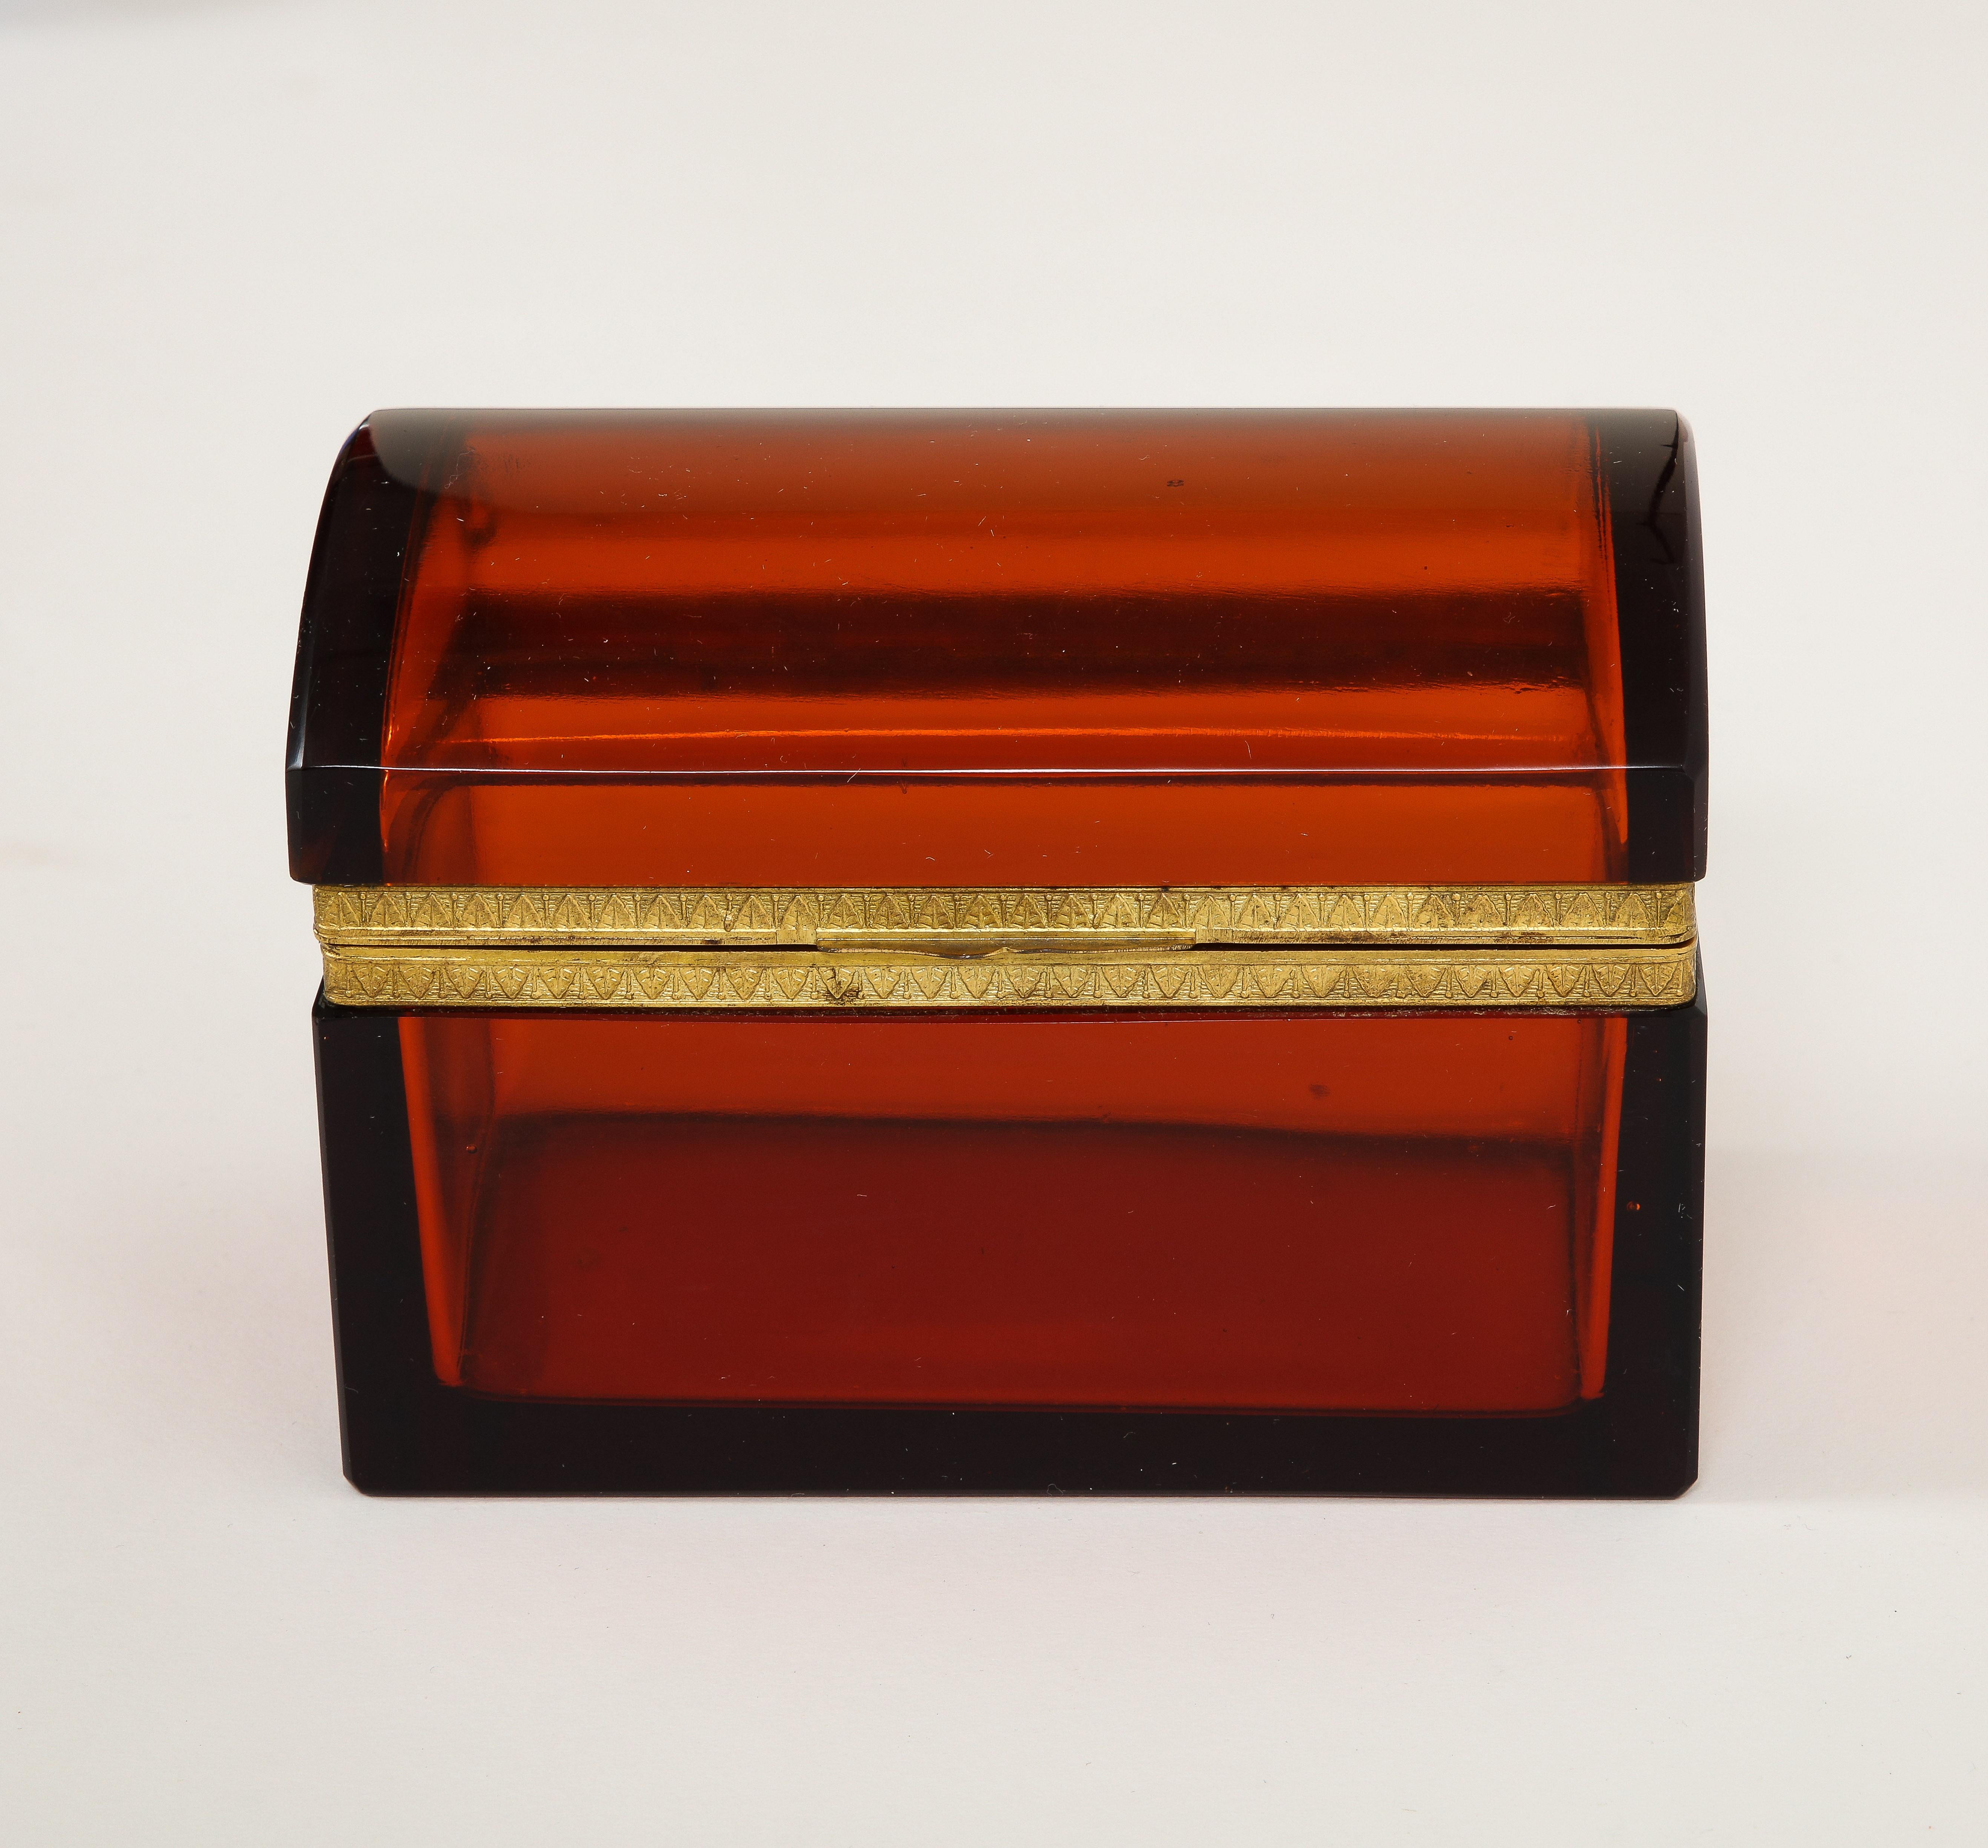 Boîte à cristaux orange/rouge du 19e siècle, montée sur bronze doré. La boîte est composée de deux sections de cristal français orange/rouge qui sont montées sur un fabuleux loquet en bronze doré. Le bronze de la biche est magnifiquement ciselé et